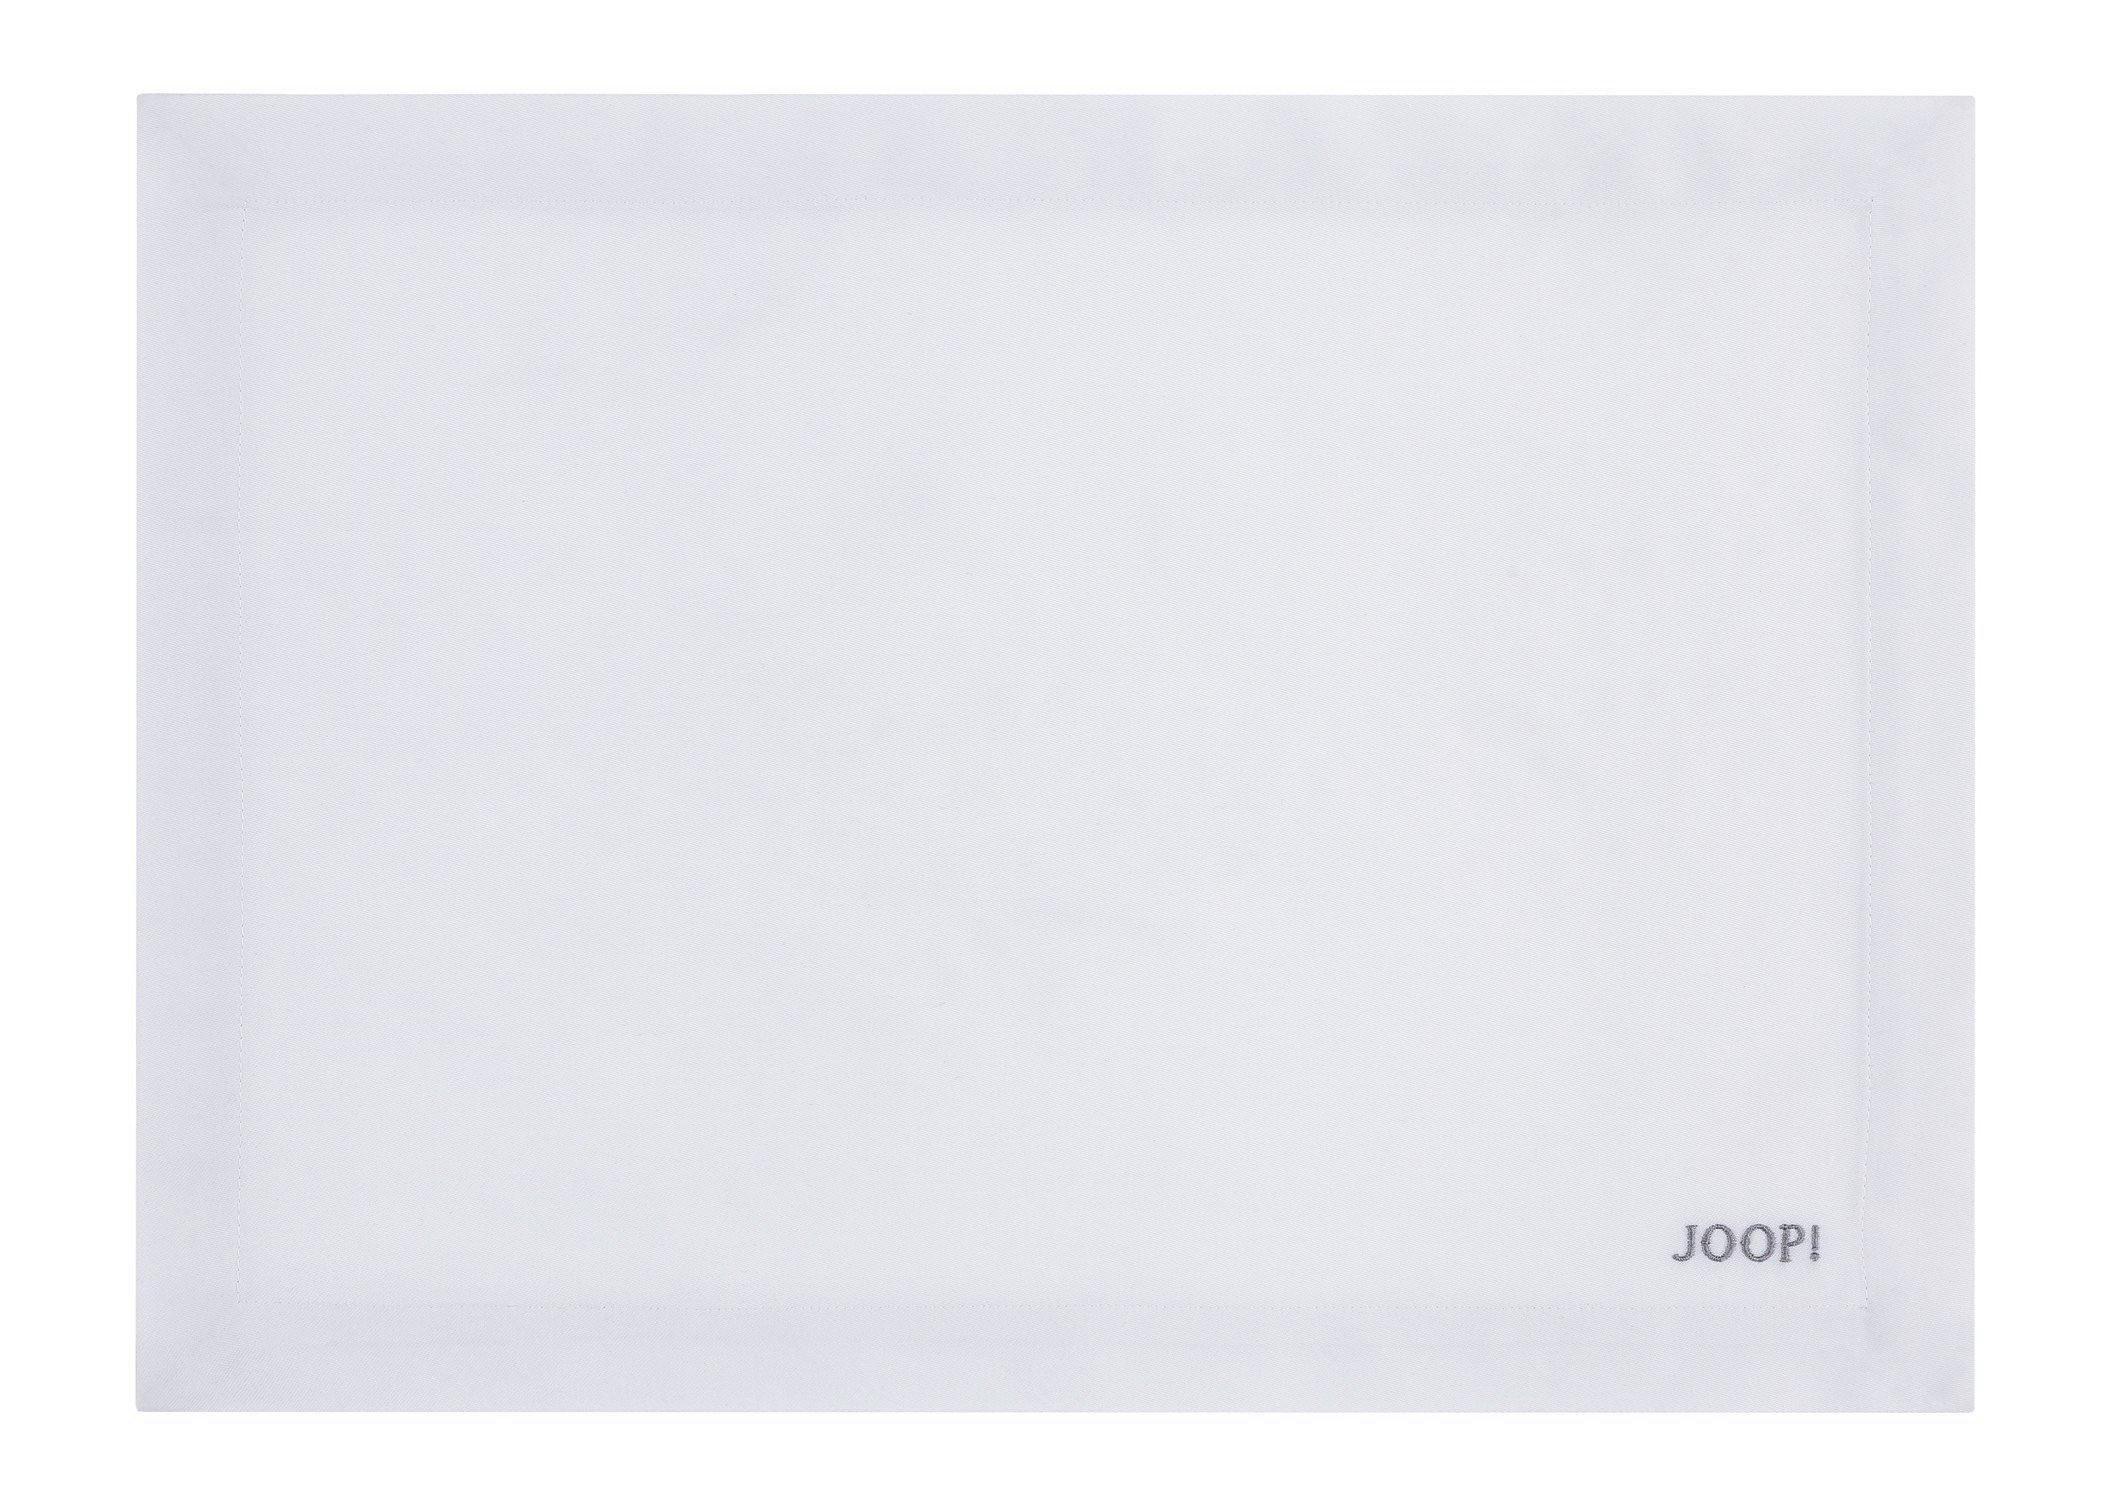 Tischset 2er Set Textil Silberfarben, Weiß 36/48 cm  - Silberfarben/Weiß, Design, Textil (36/48cm) - Joop!